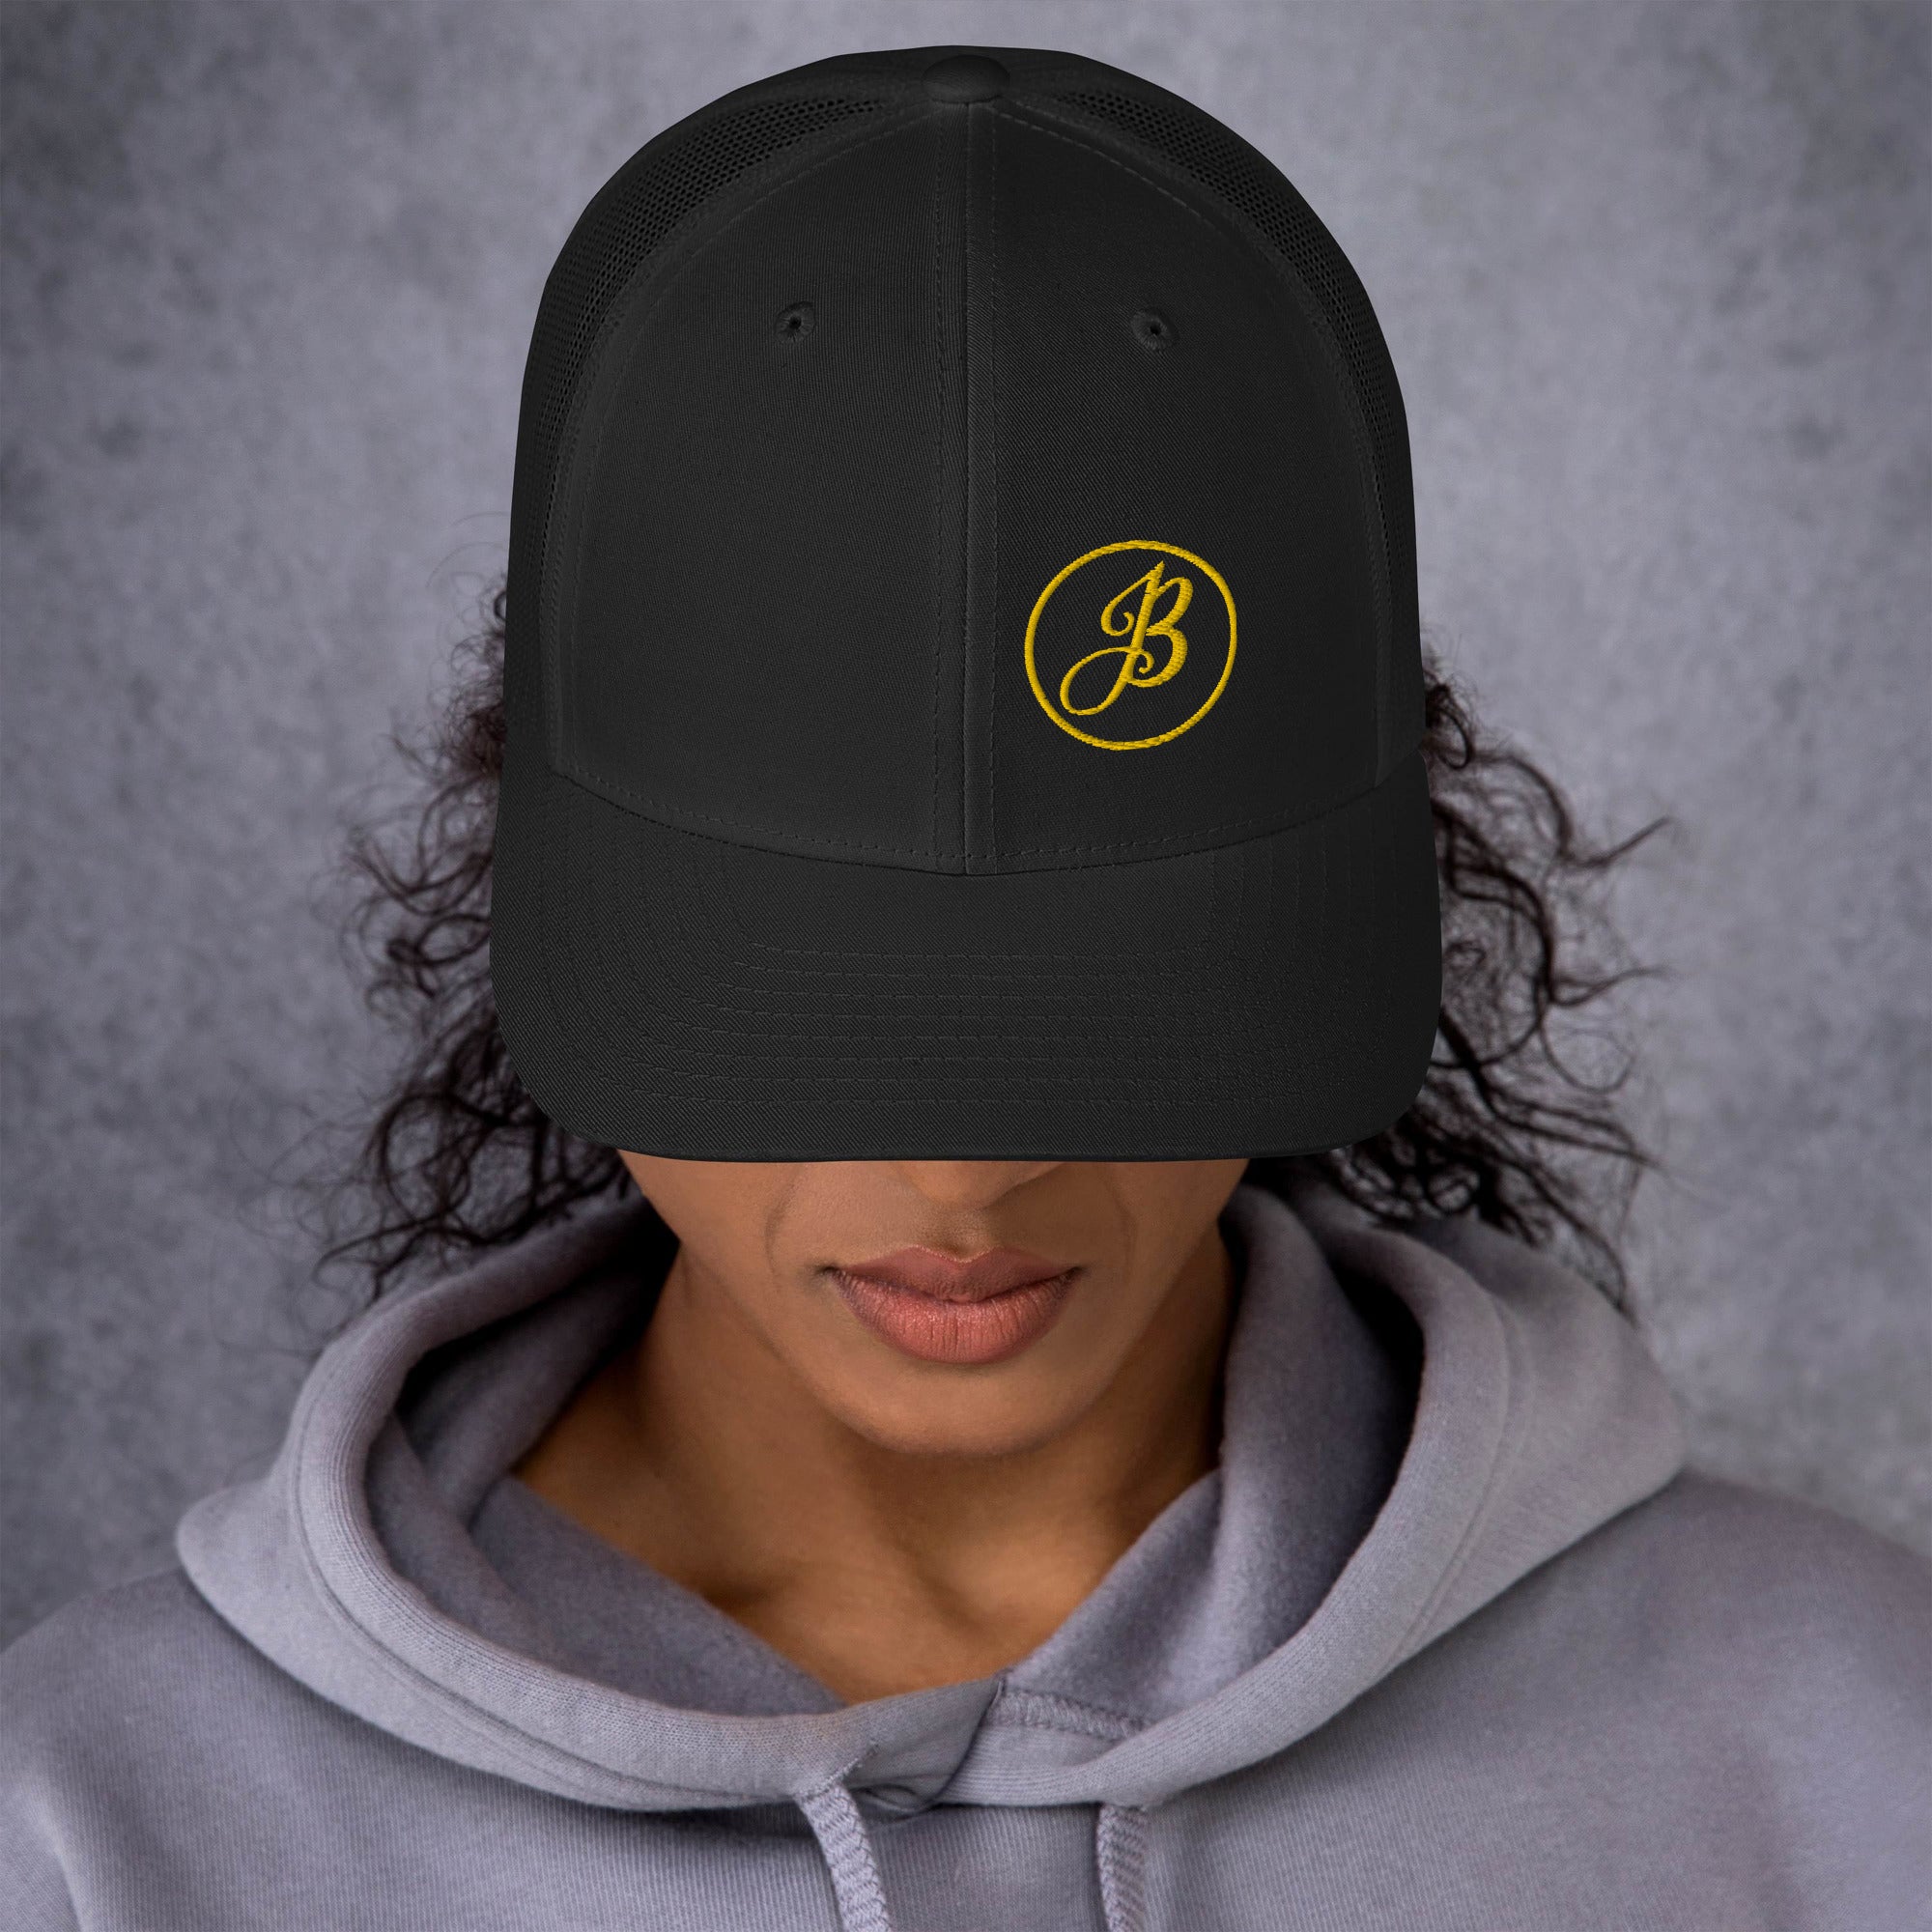 JB Logo Gold Black Trucker Cap